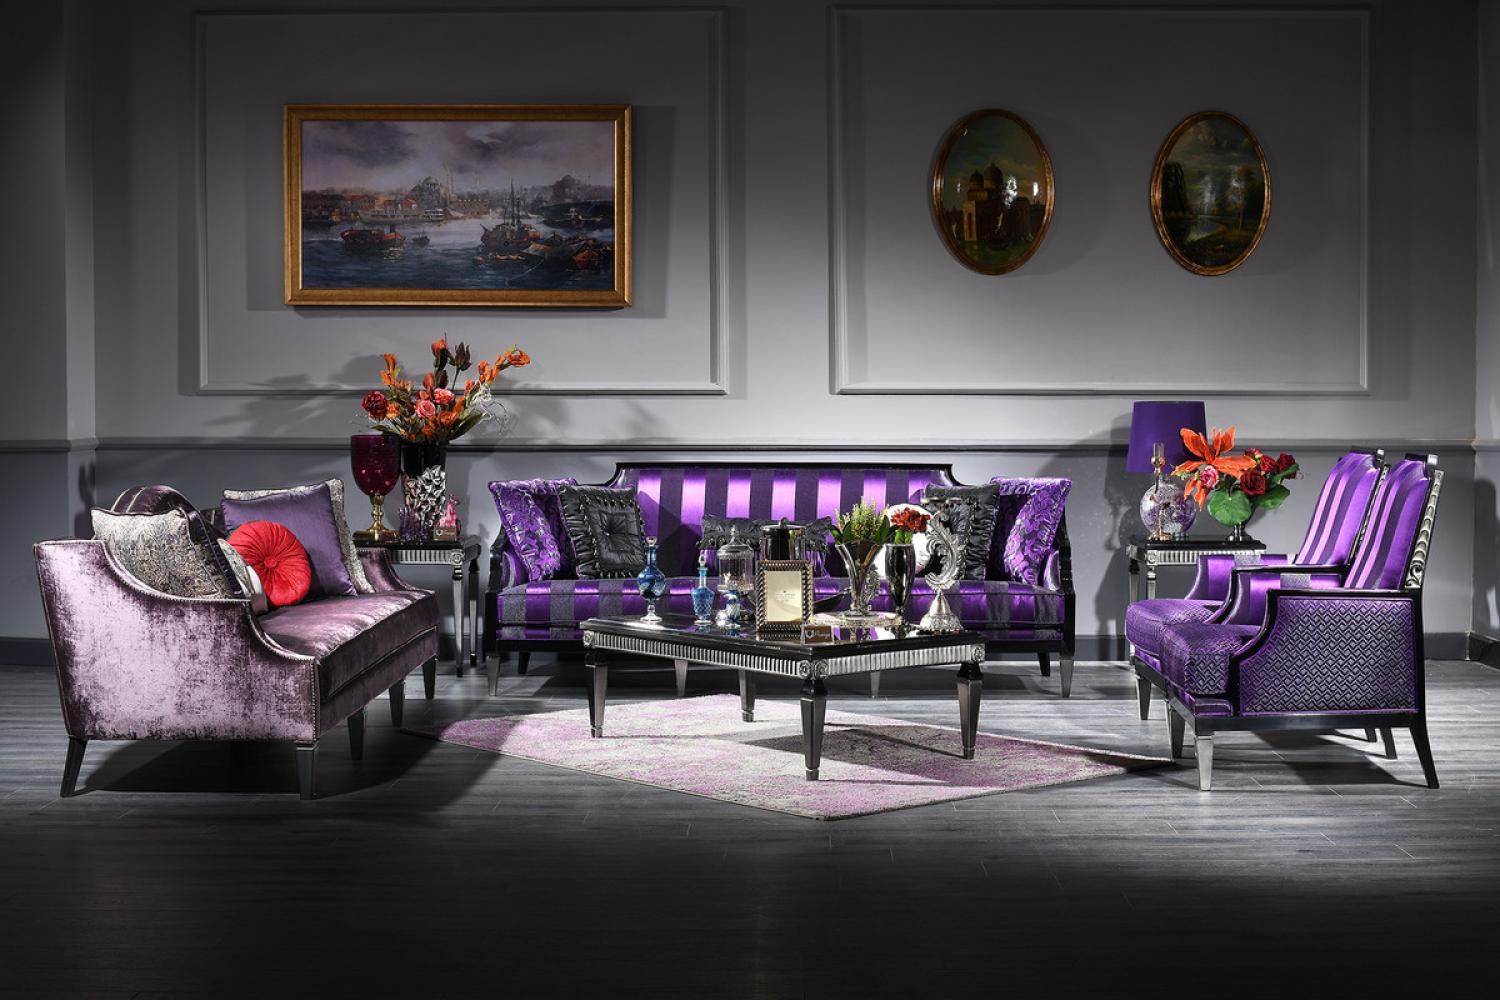 Casa Padrino Luxus Barock Wohnzimmer Set Lila / Schwarz / Silber - 2 Sofas & 2 Sessel & 1 Couchtisch & 2 Beistelltische - Barockmöbel Bild 1